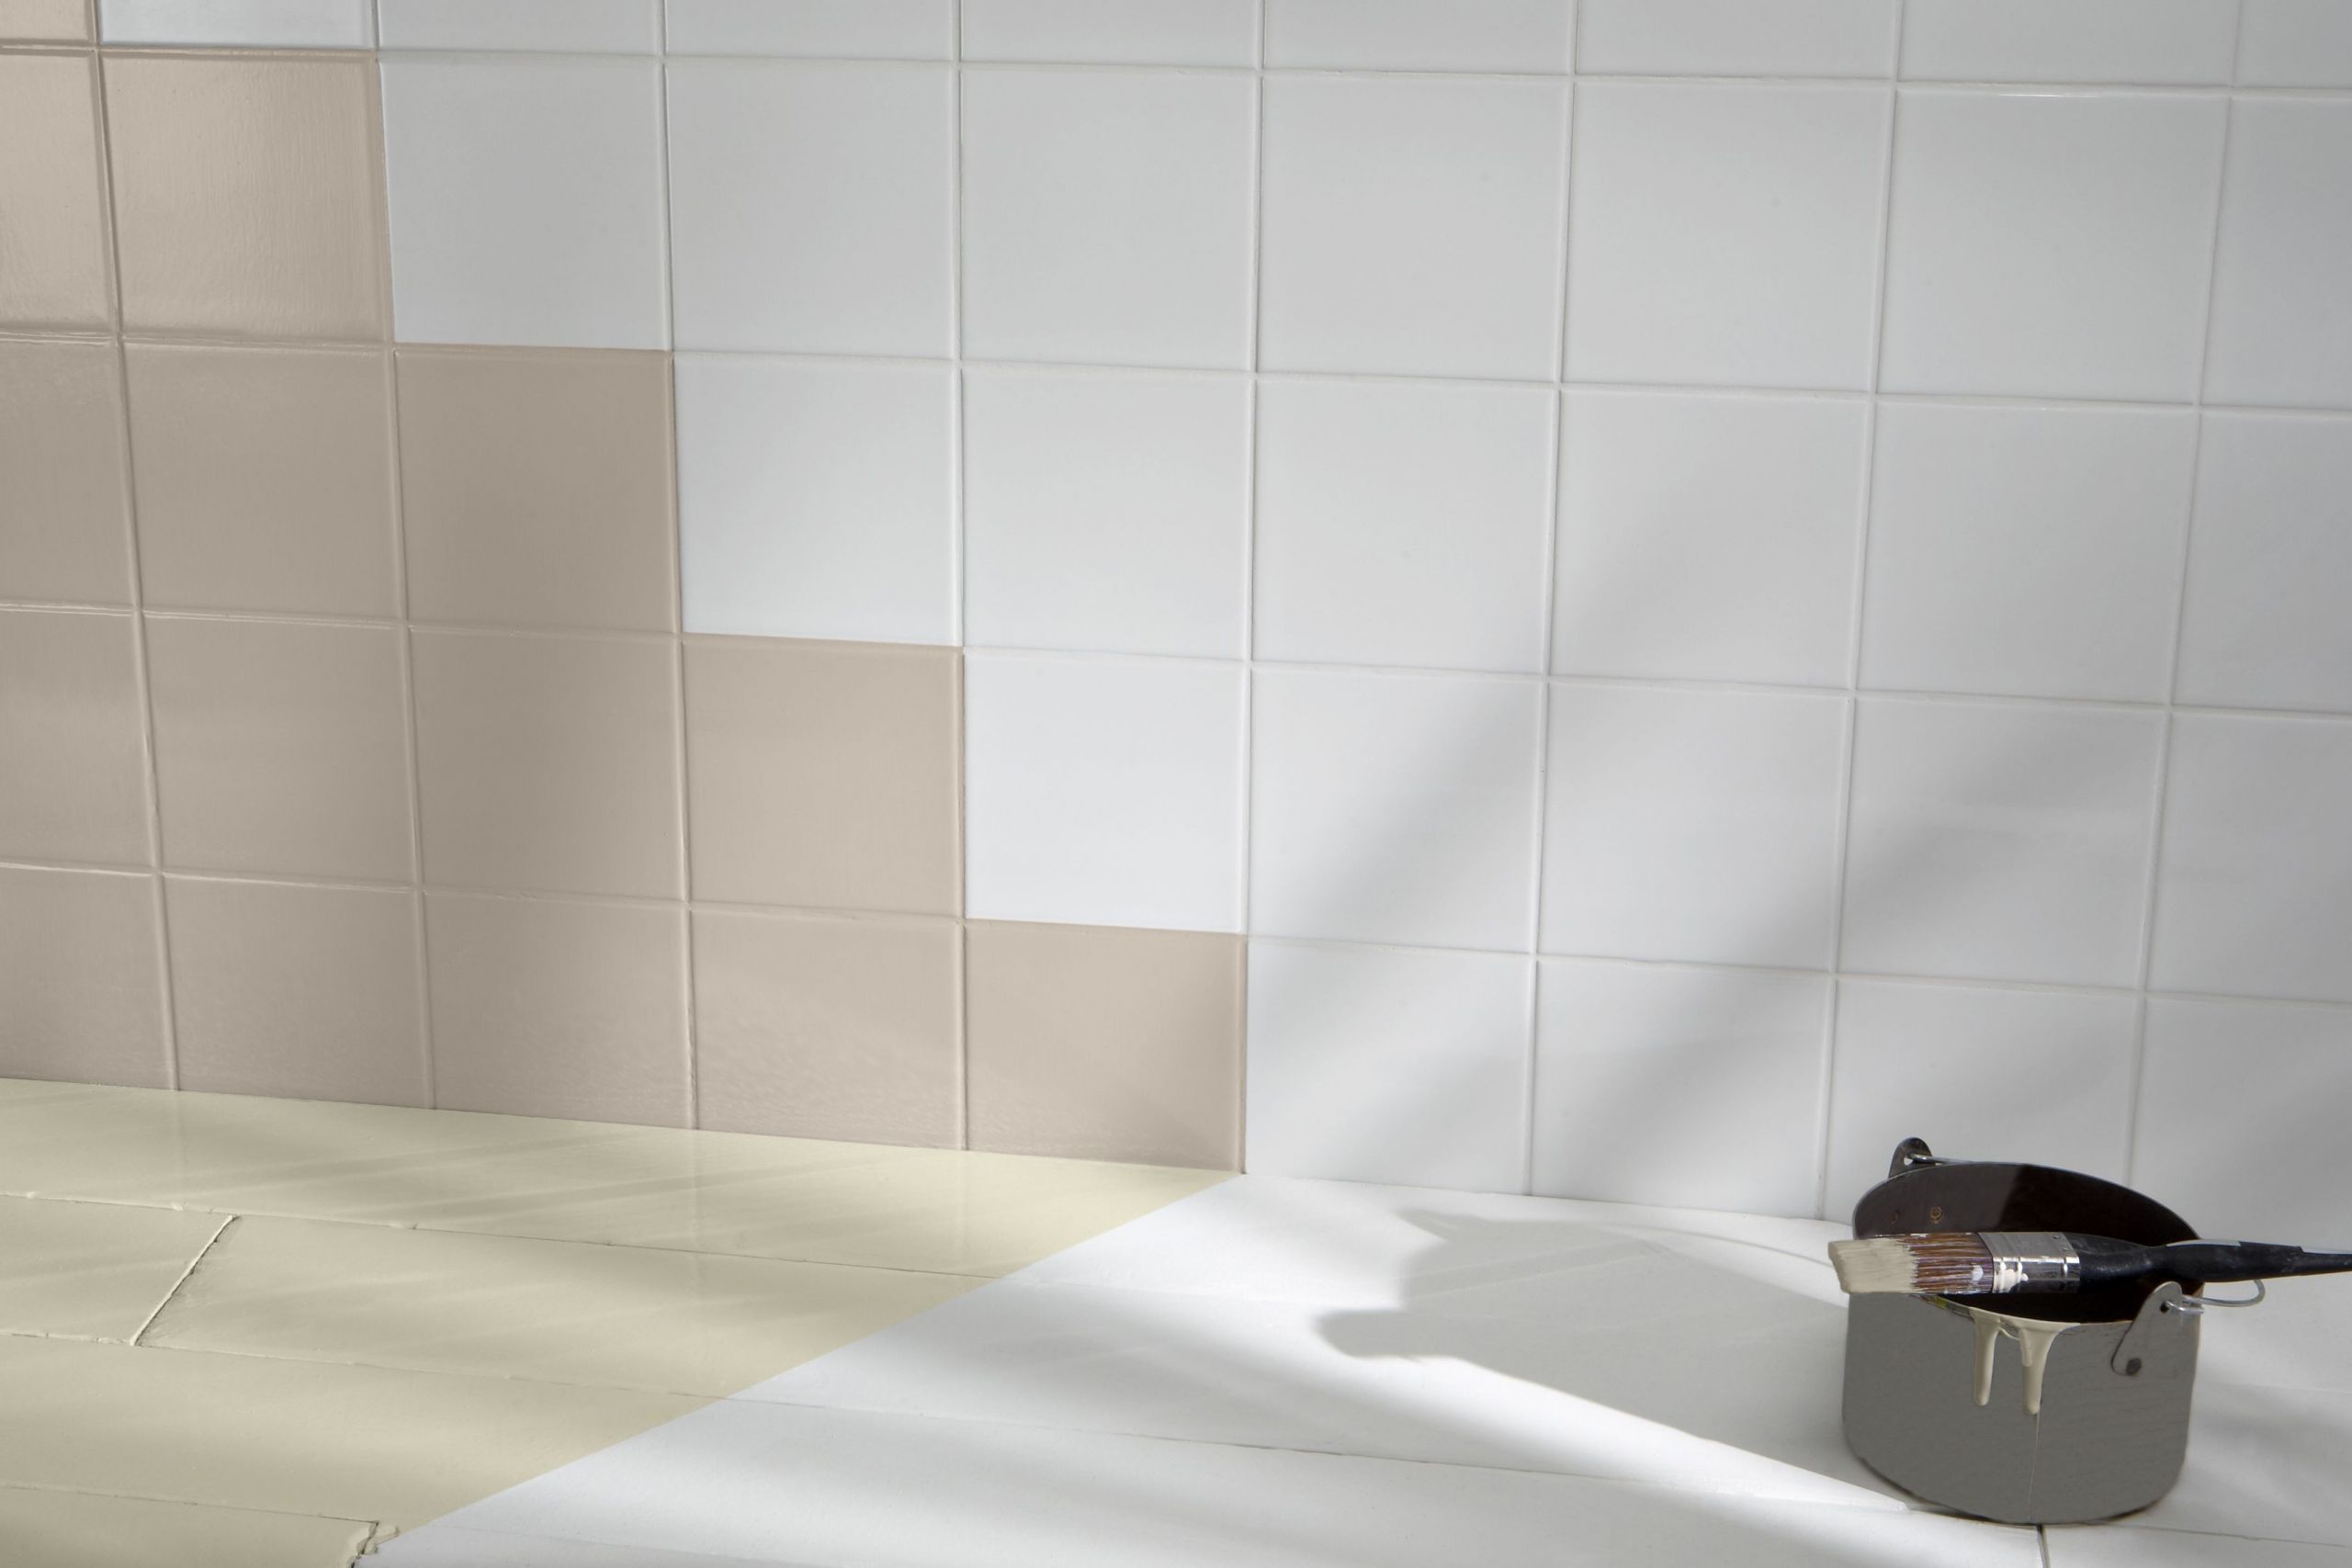 Painting Bathroom Tile
 How to paint tiles Ideas & Advice